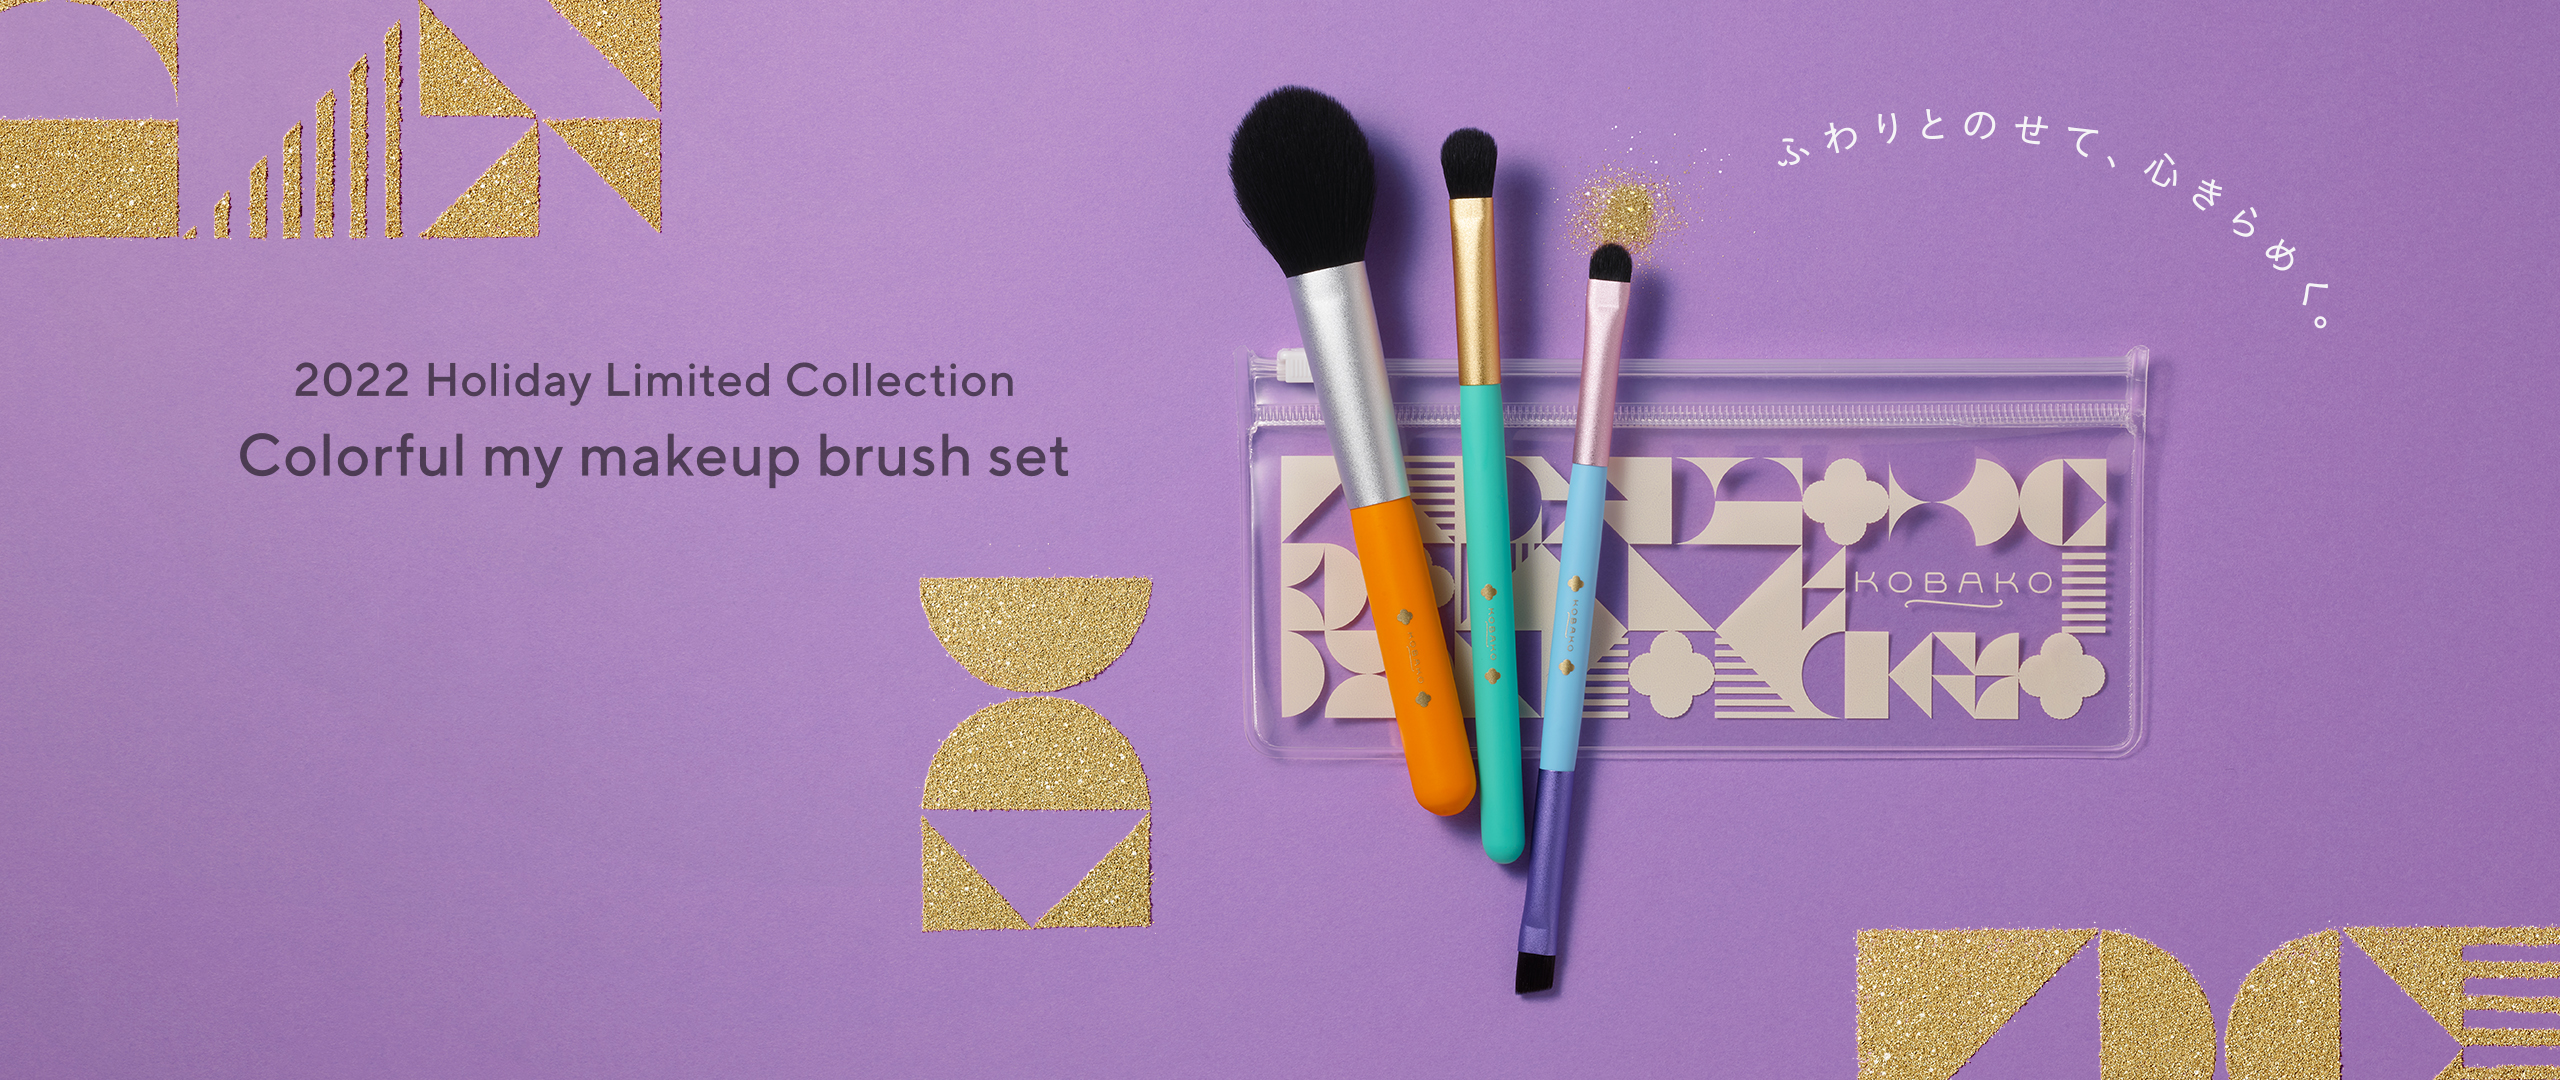 ふわりとのせて、心きらめく。KOBAKO 2022 Holiday Limited Collection Colorful my makeup brush set